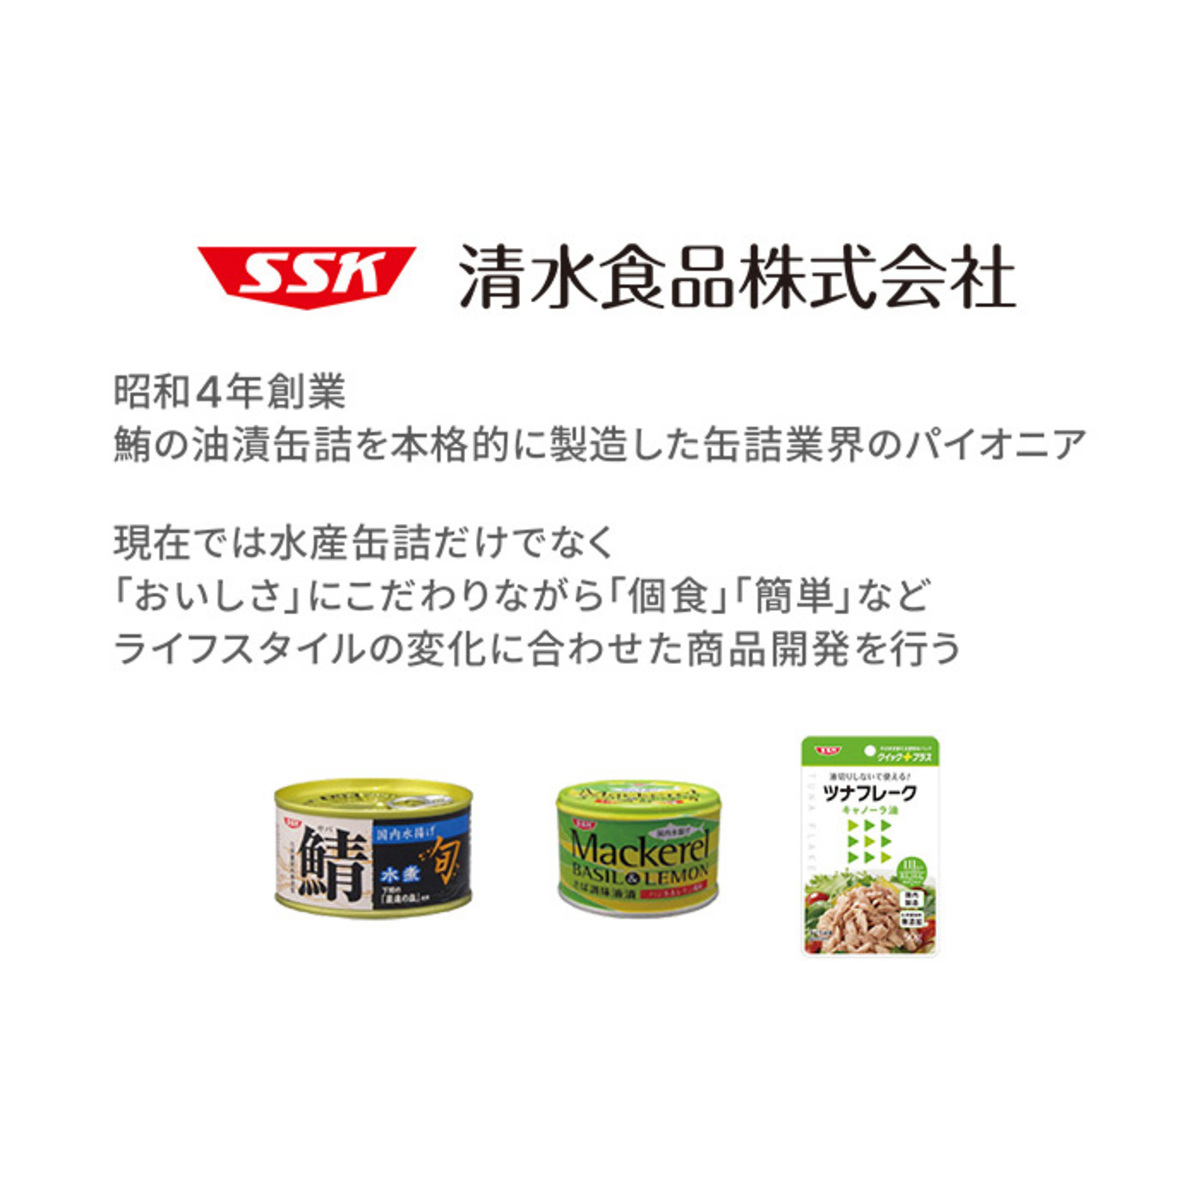 SSK シェフズリザーブ冷製ごちそうスープバラエティ4種 清水食品株式会社 - QVC.jp